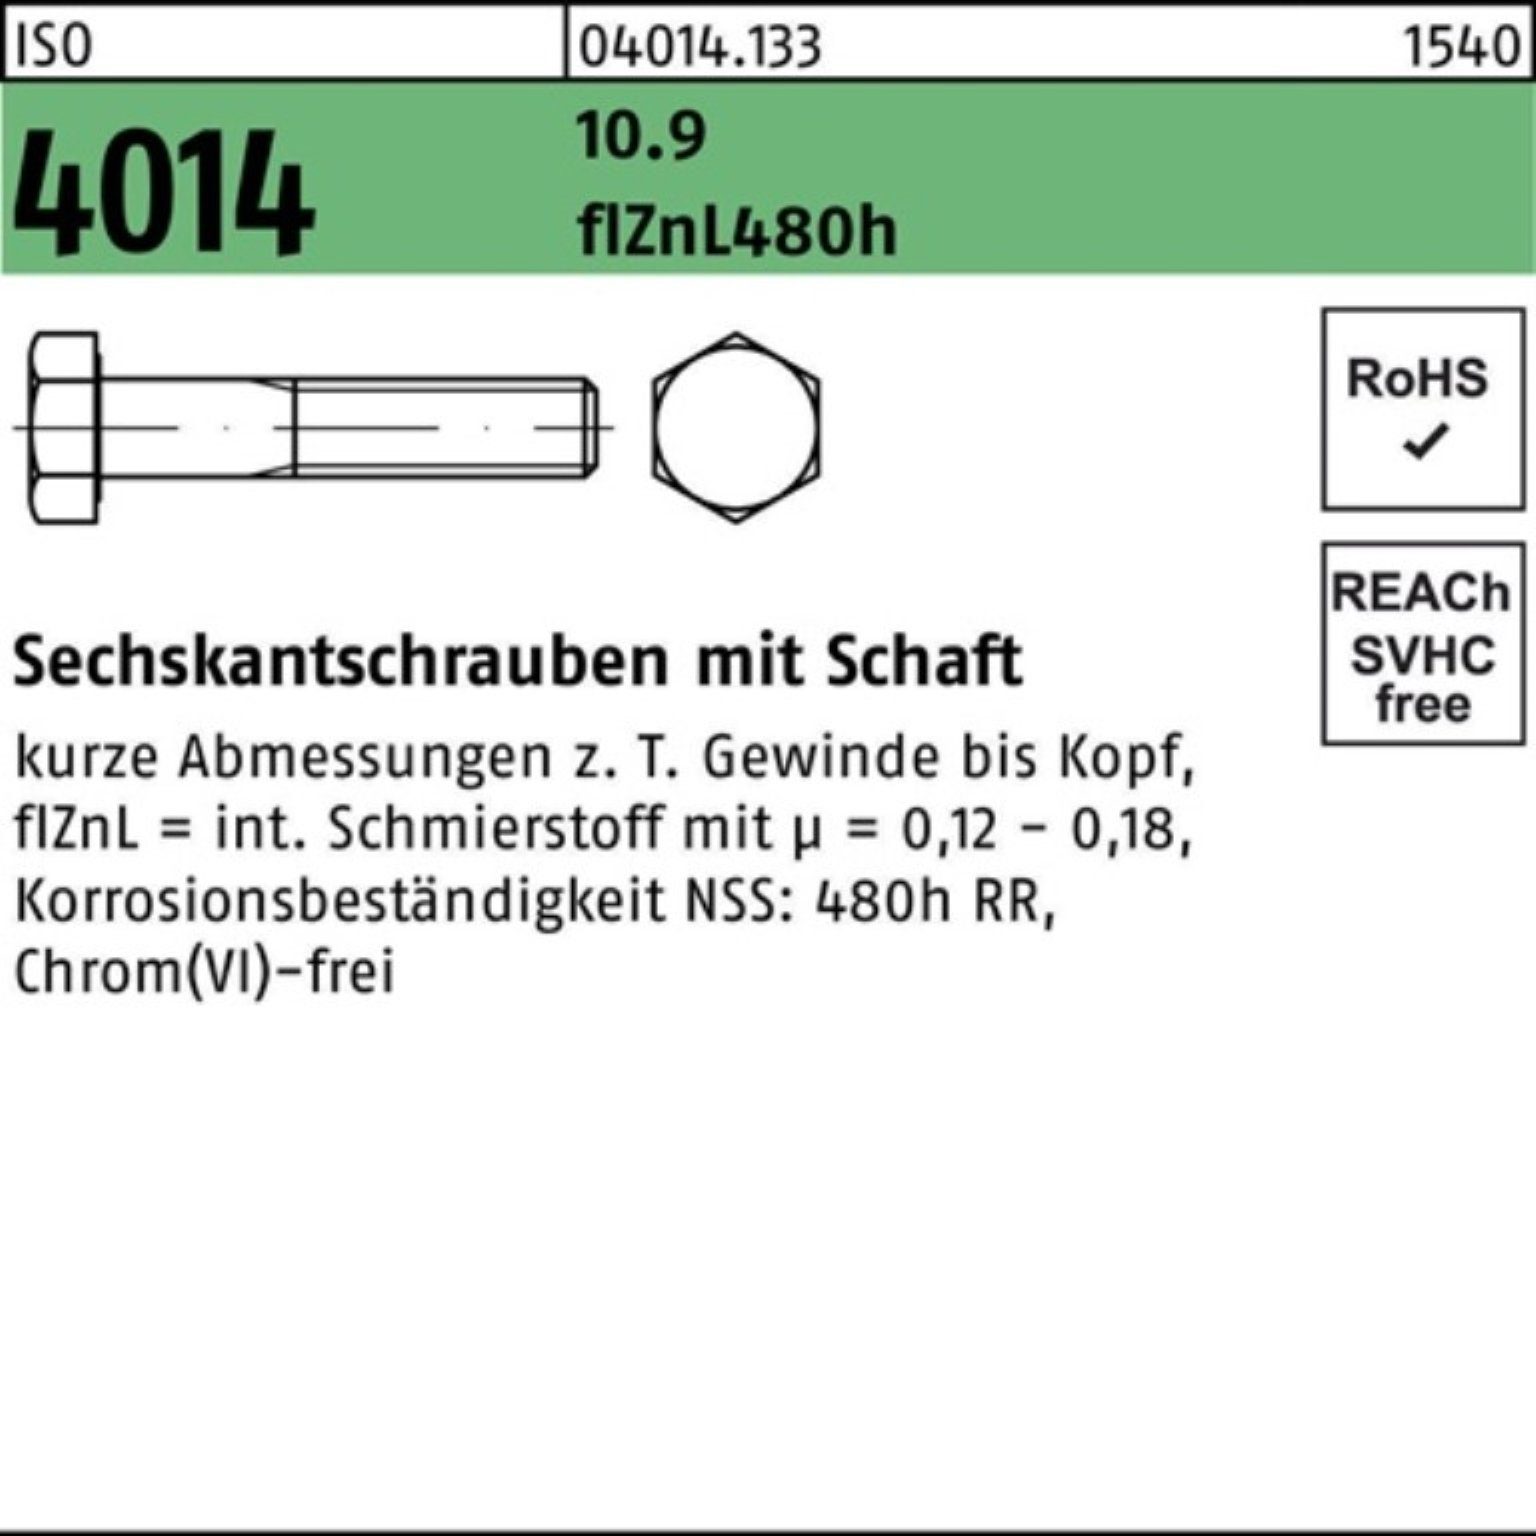 Bufab Sechskantschraube 100er Sechskantschraube M10x zinklamelle 10.9 Schaft Pack 100 4014 ISO